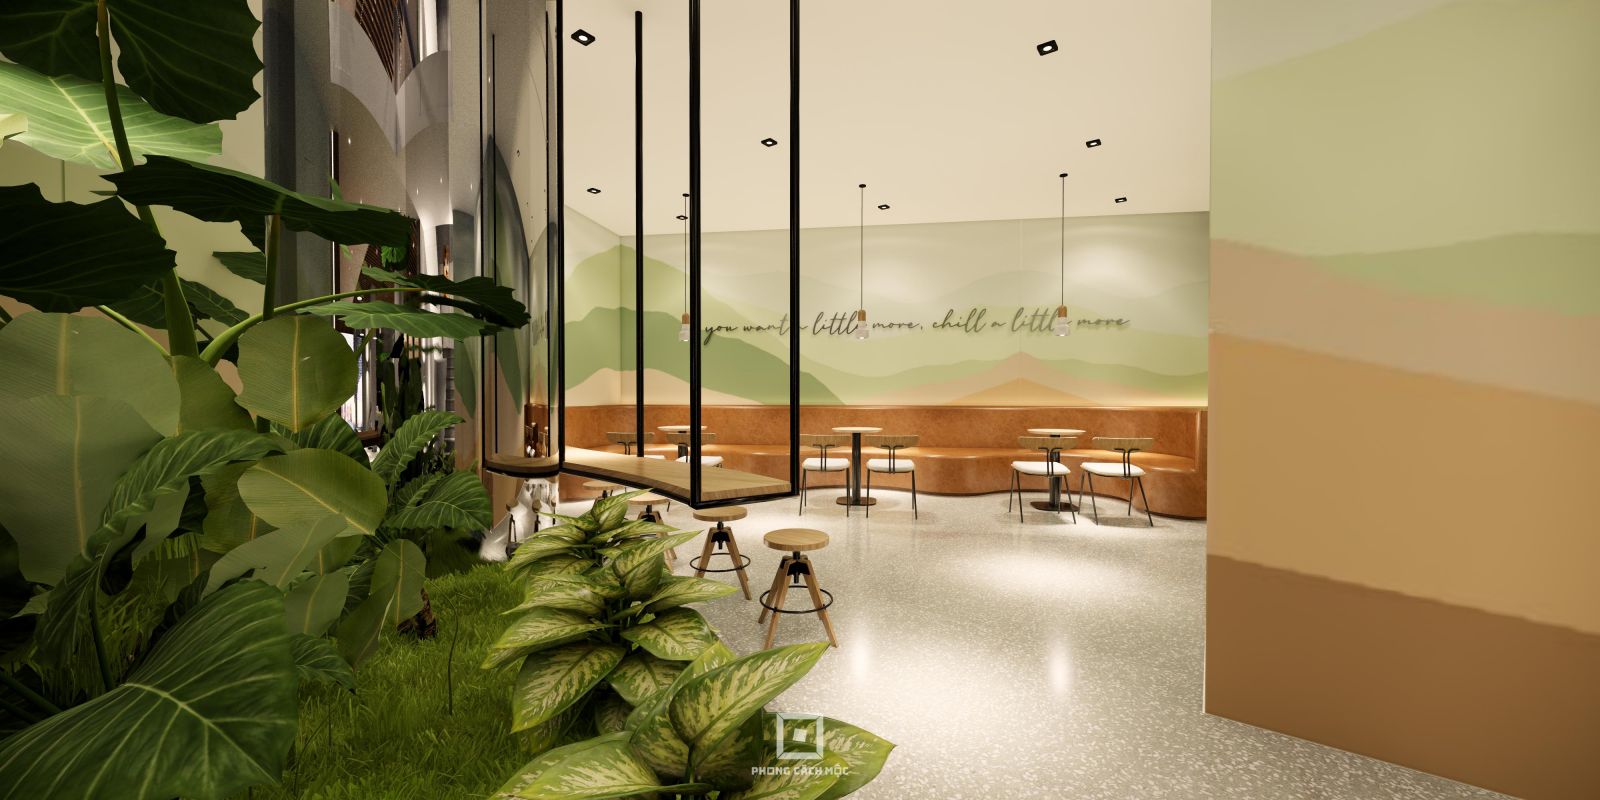 Tiểu cảnh cây xanh trong thiết kế quán cafe Fresh Coffee